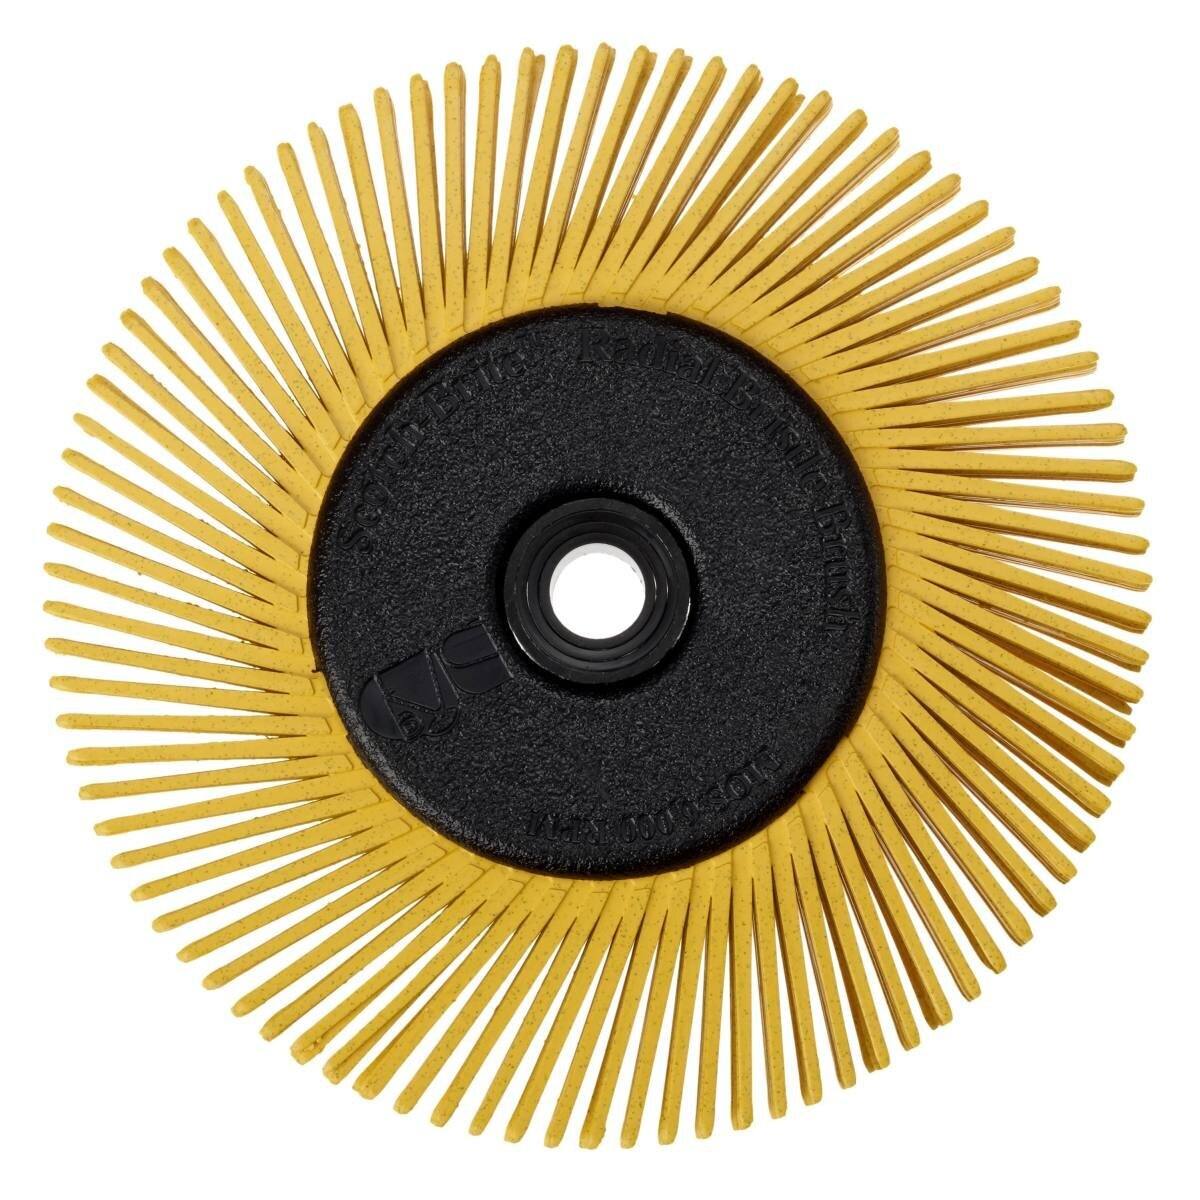 3M Scotch-Brite Radial Bristle Disc BB-ZB mit Flansch, gelb, 152,4 mm, P80, Typ A #27606